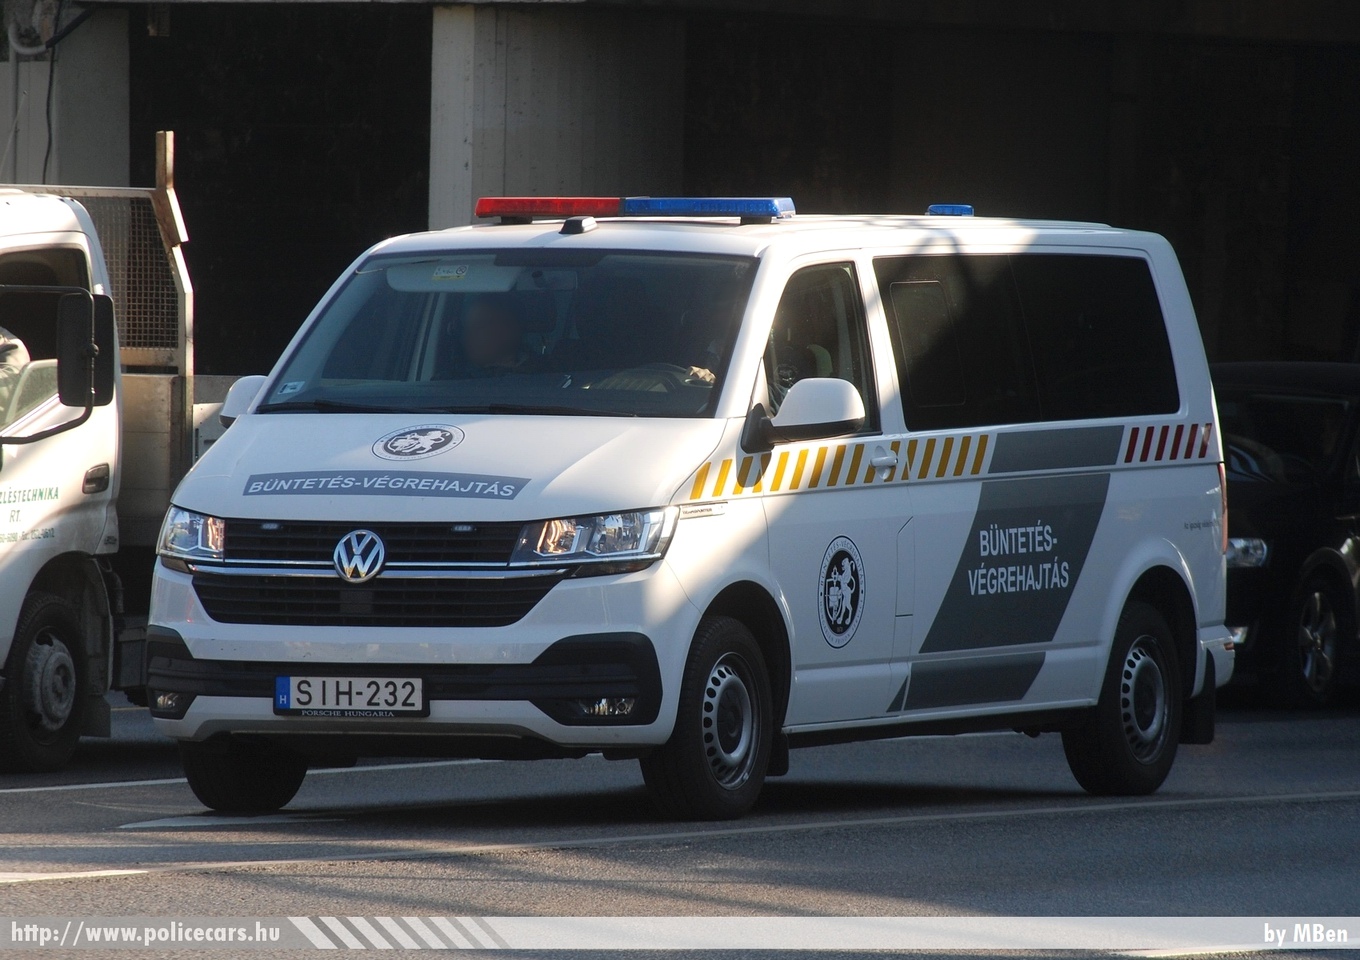 Volkswagen Transporter T6, fotó: MBen
Keywords: BV magyar Magyarország Hungary hungarian prison Büntetés-végrehajtás SIH-232